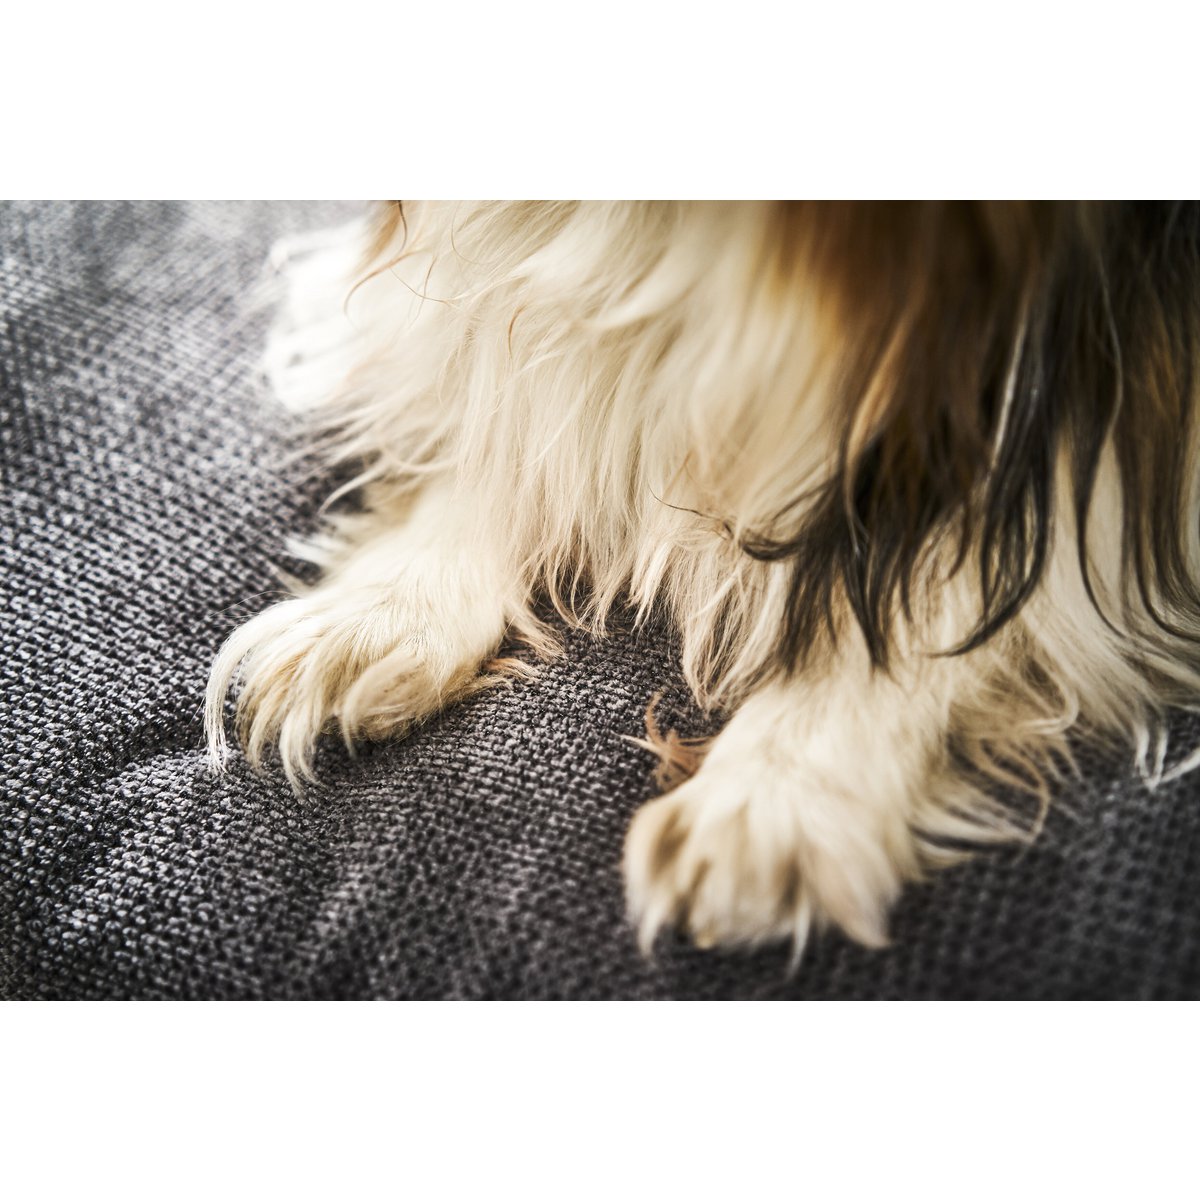 PRADO - TUDOR design hondenmandHet PRADO hondenbed van LABONI is een bekroond, stijlvol en comfortabel bed voor honden. Het heeft een klassieke framestructuur en een duurzame bekleding. De matras LABONIwafwafPRADO - TUDOR design hondenmand